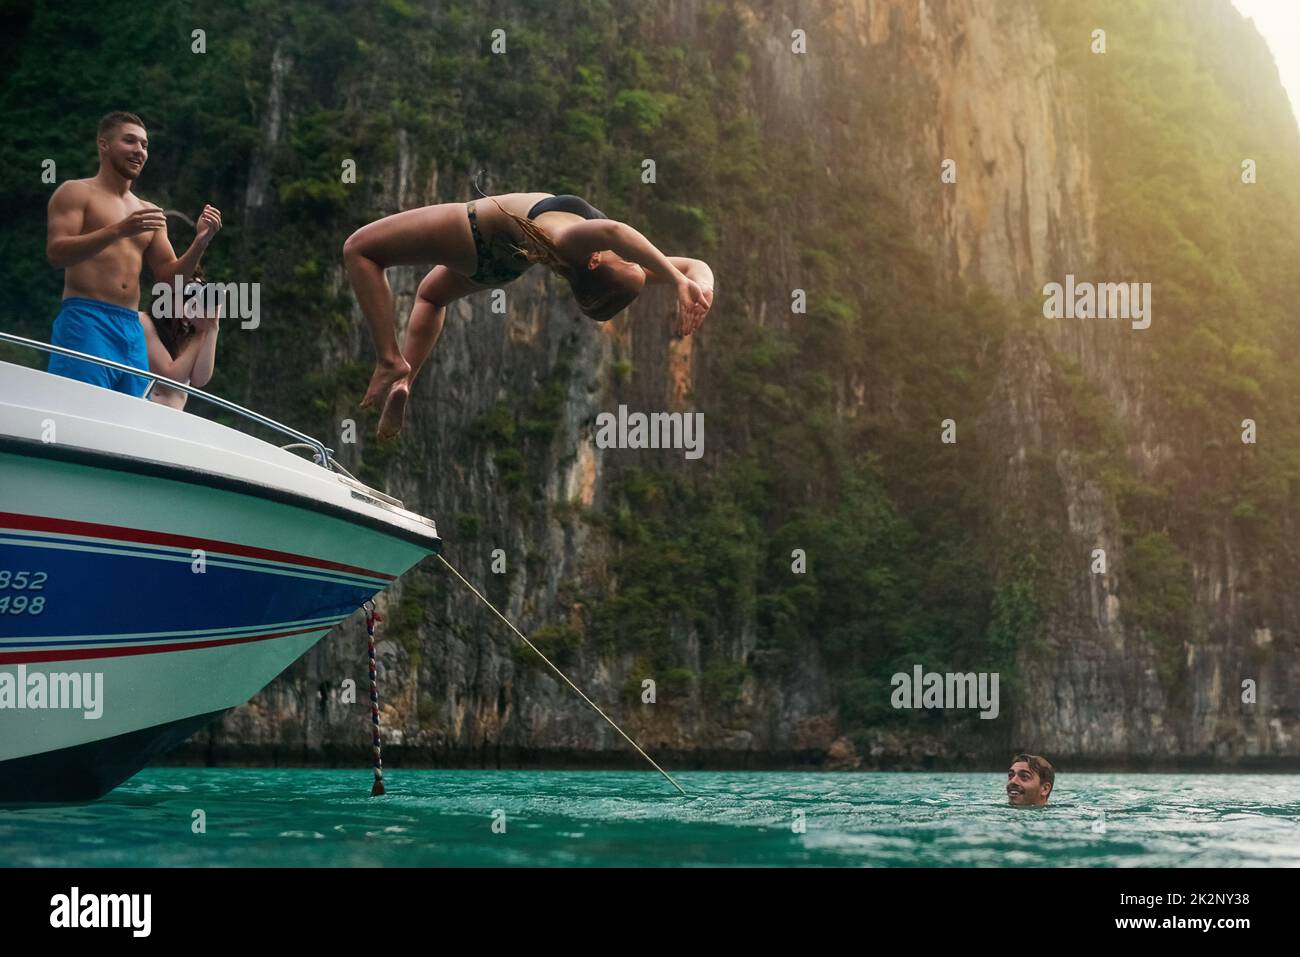 Kein Risiko, keine Belohnung. Aufnahme einer jungen Frau, die einen Rückschlag von einem Boot macht, während ihre Freunde zusehen. Stockfoto